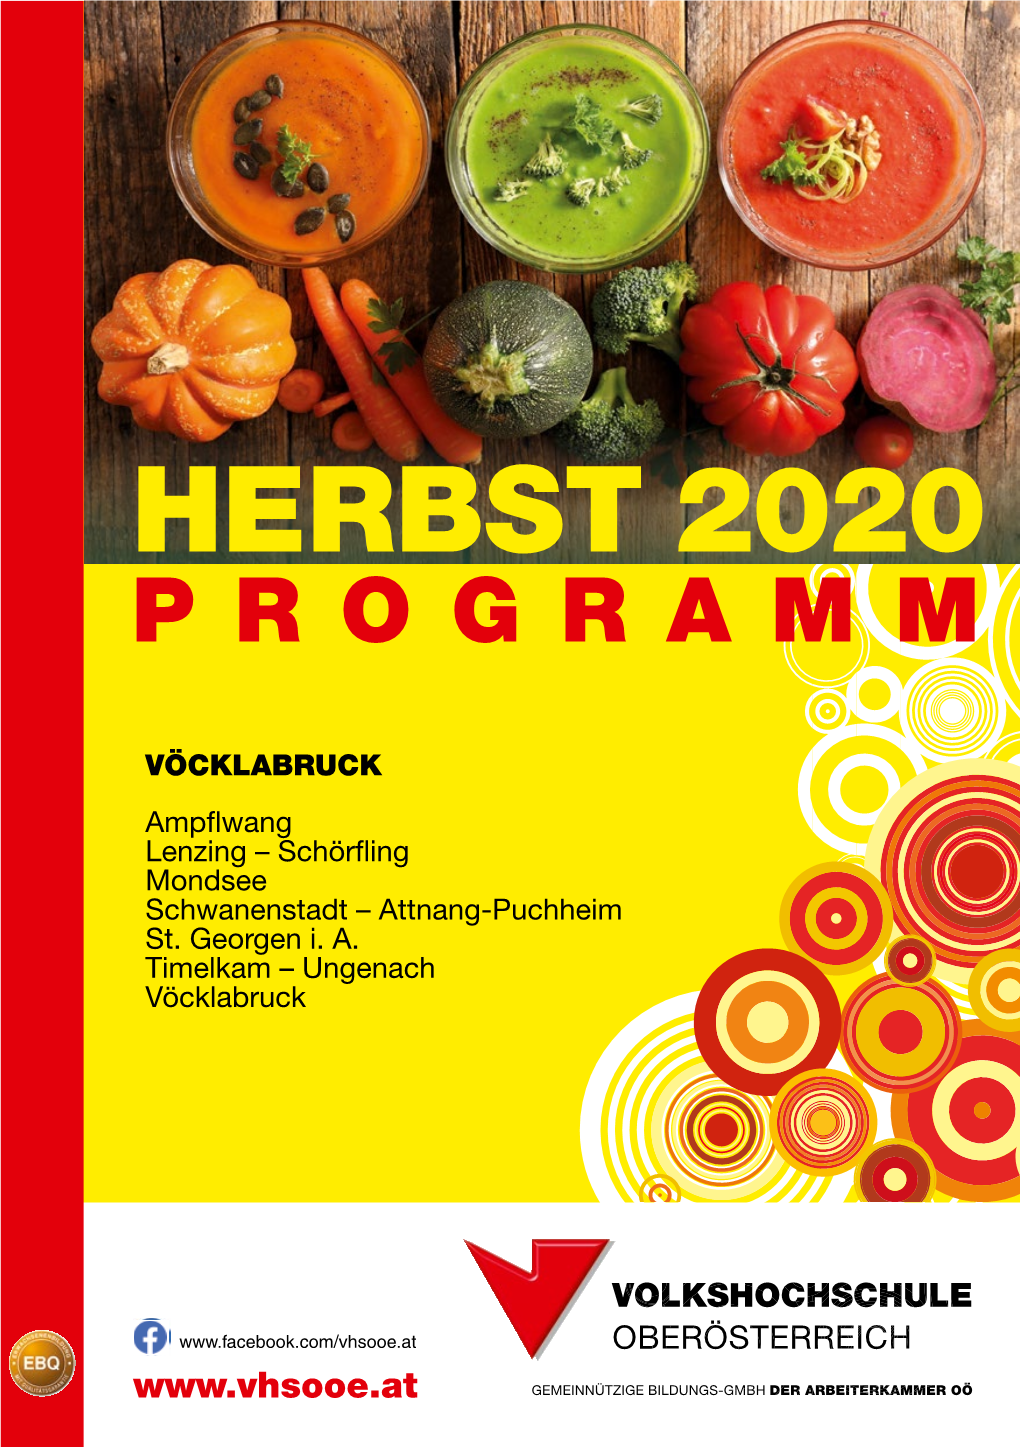 Herbst 2020 Online: 4840 Vöcklabruck Per Mail Oder ✆: Kontakte Seite 3 Bis 5 Programm